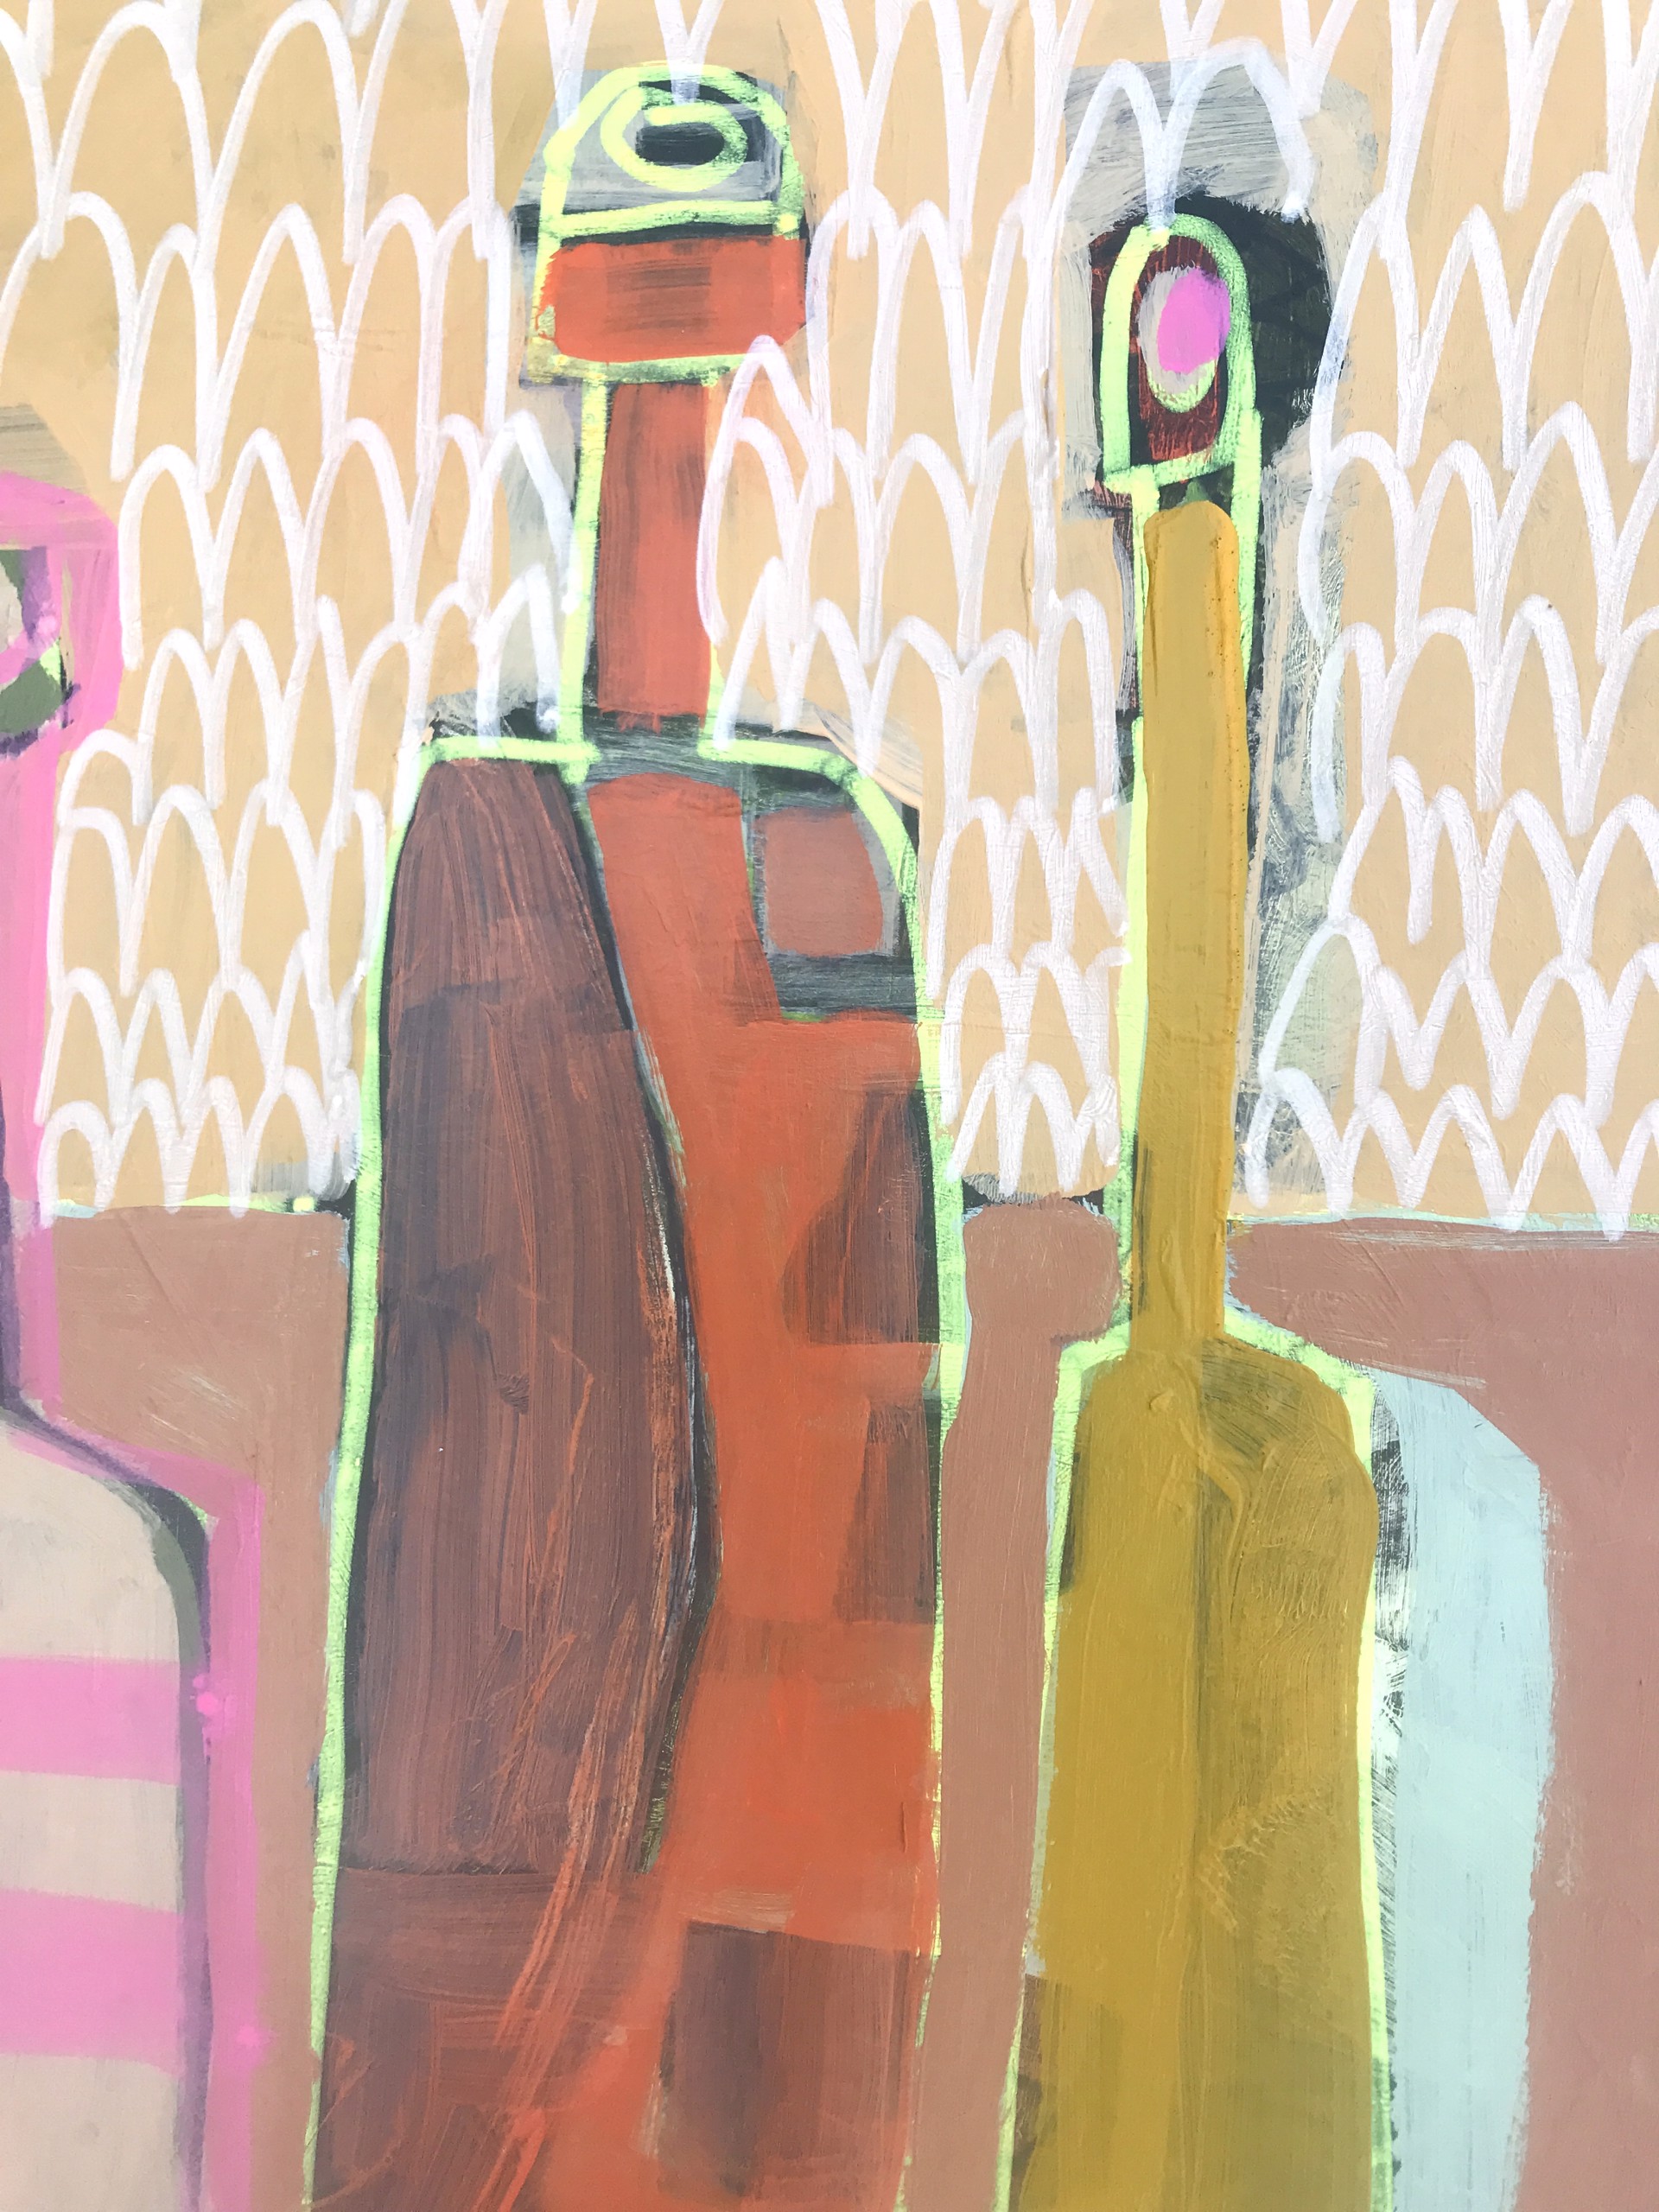 Three Bottles on Tan Table by Rachael Van Dyke